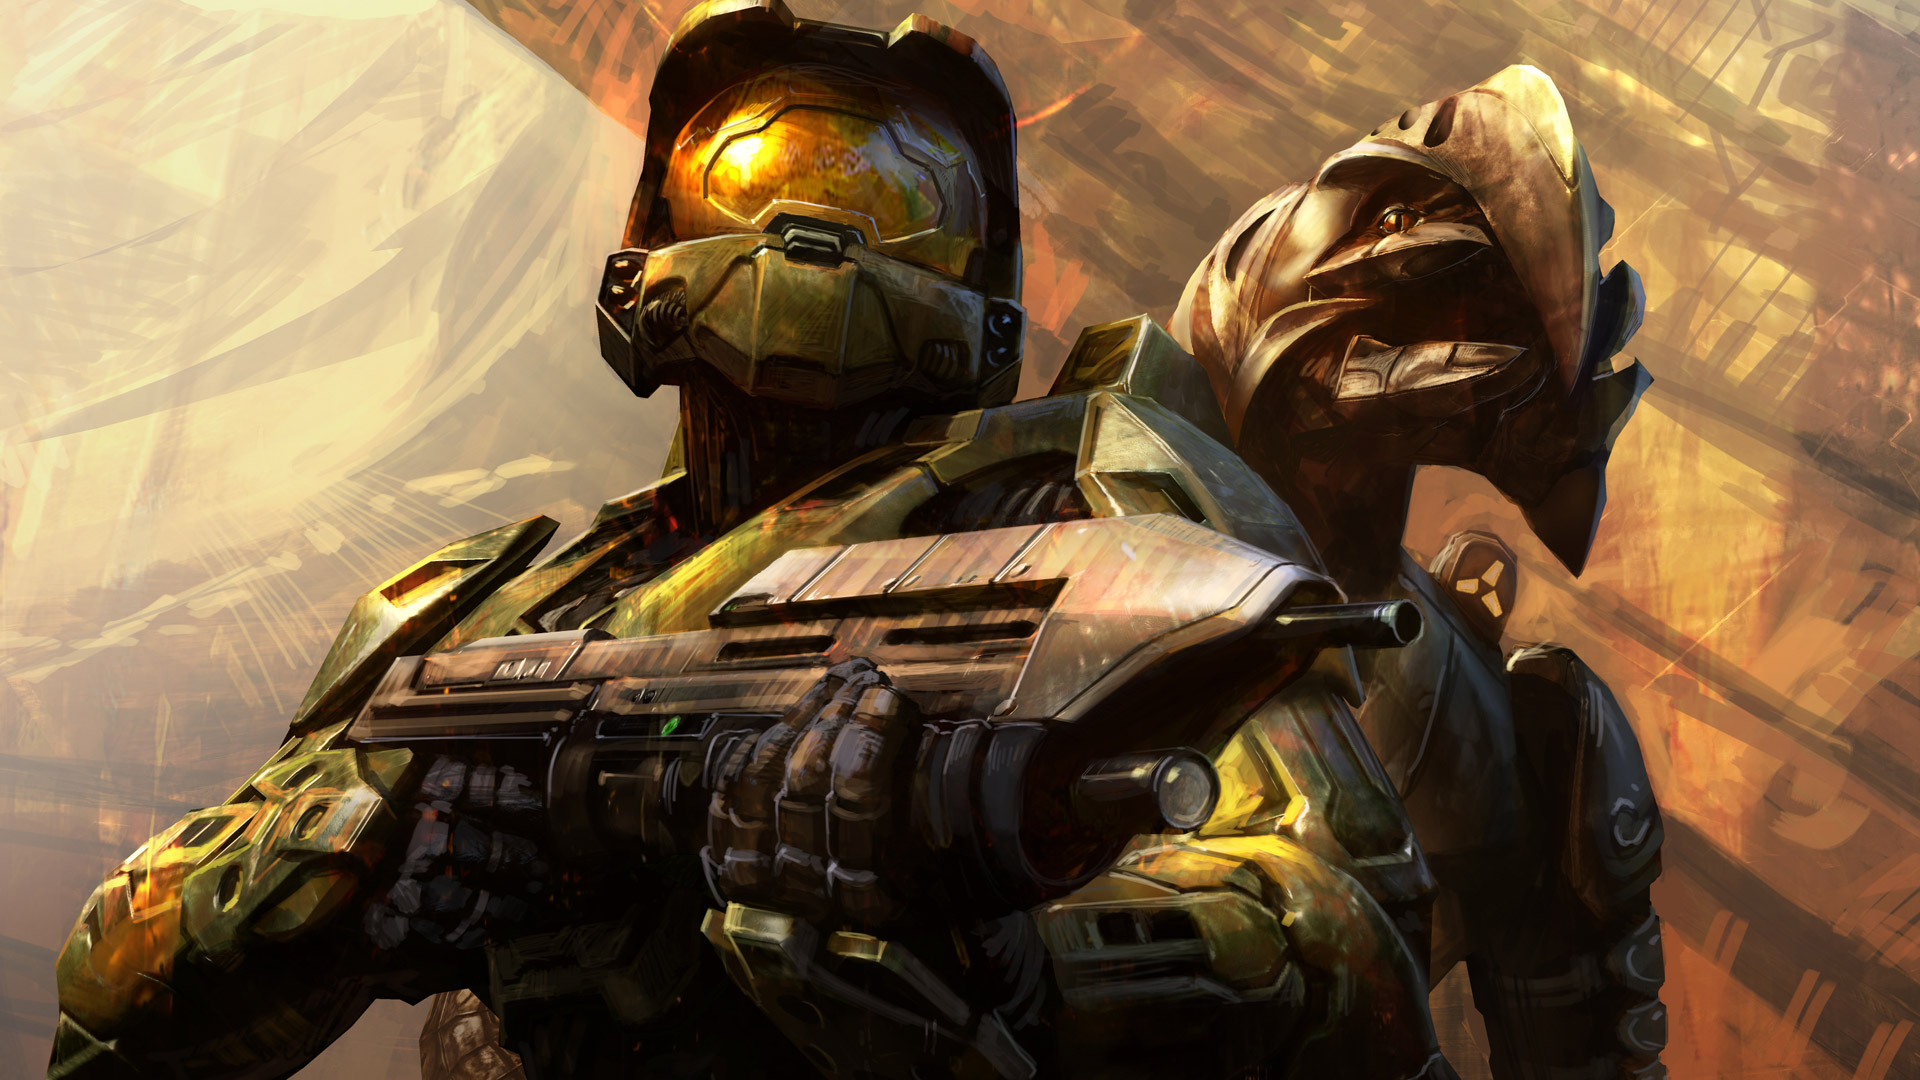 Halo 3 arrive le 14 juillet sur PC